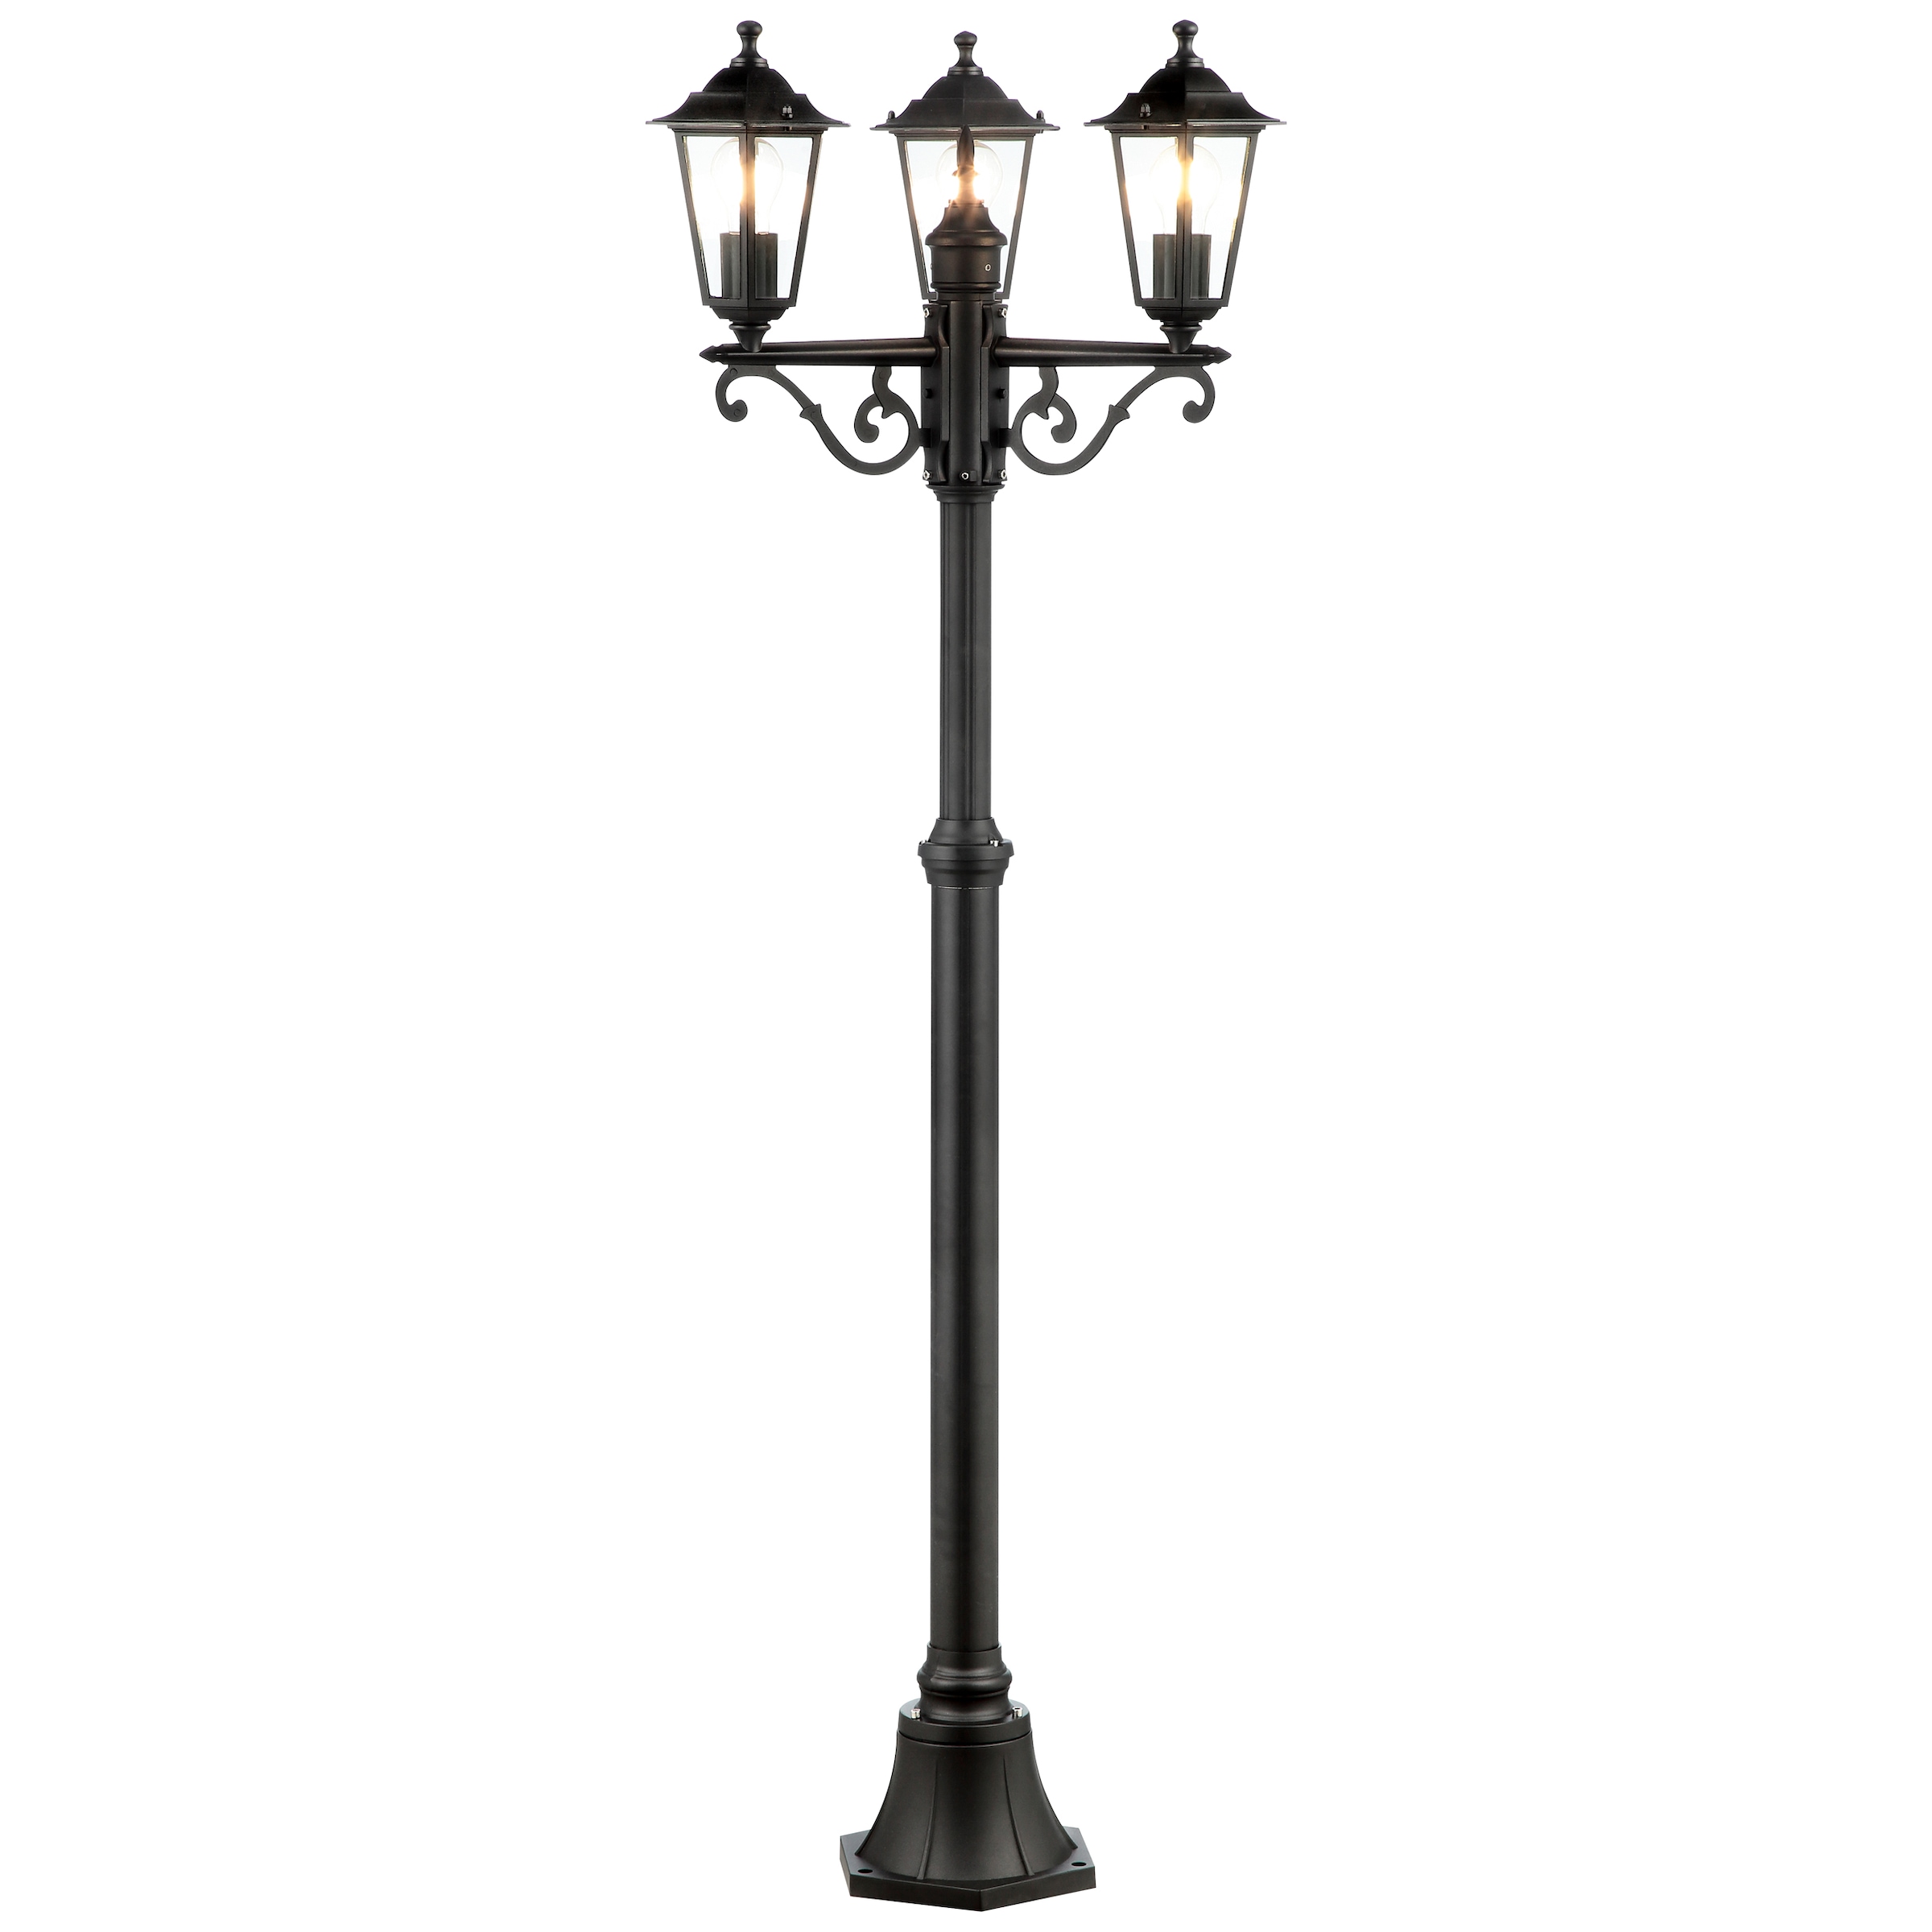 Brilliant Außen-Stehlampe »Carleen«, 3 flammig-flammig, 200 cm Höhe, Ø 61 cm, 3 x E27, Metall/Glas, schwarz